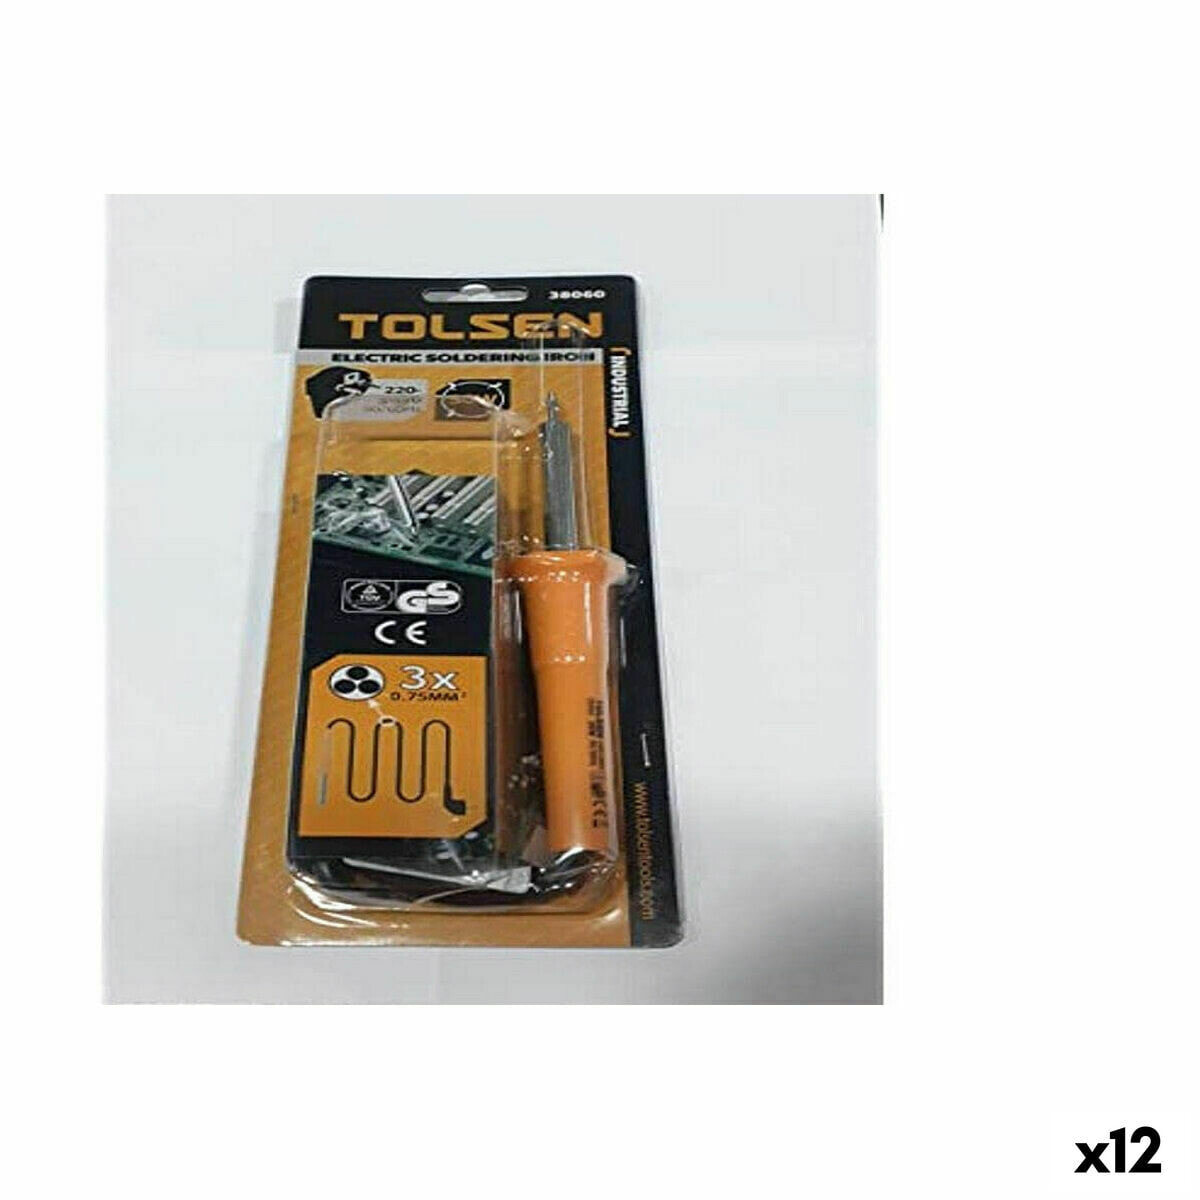 Tool kit Kiwi (12 Units)